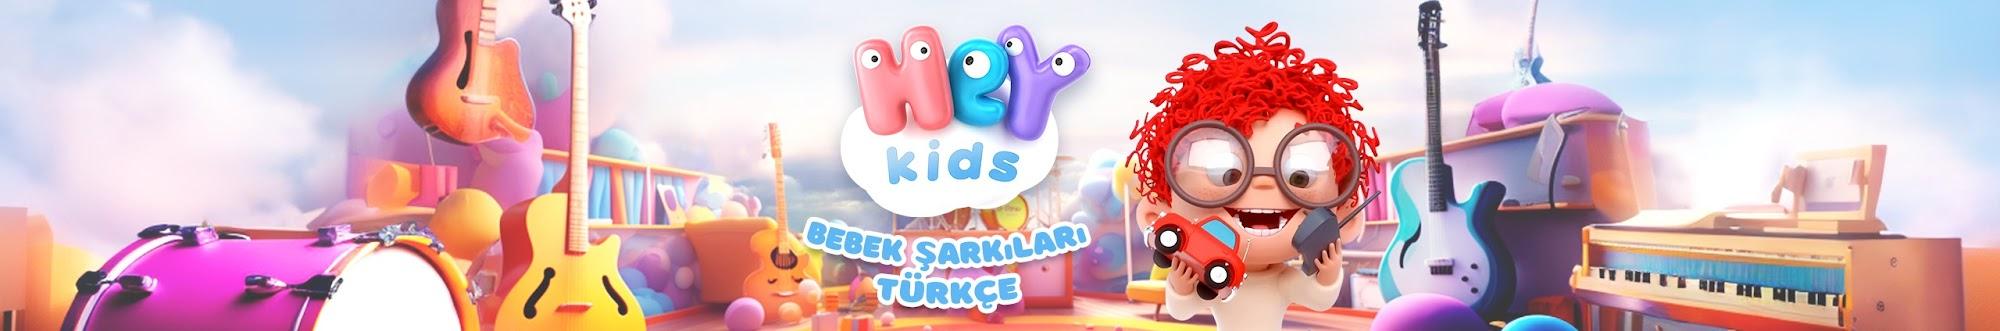 HeyKids - Bebek Şarkıları Türkçe